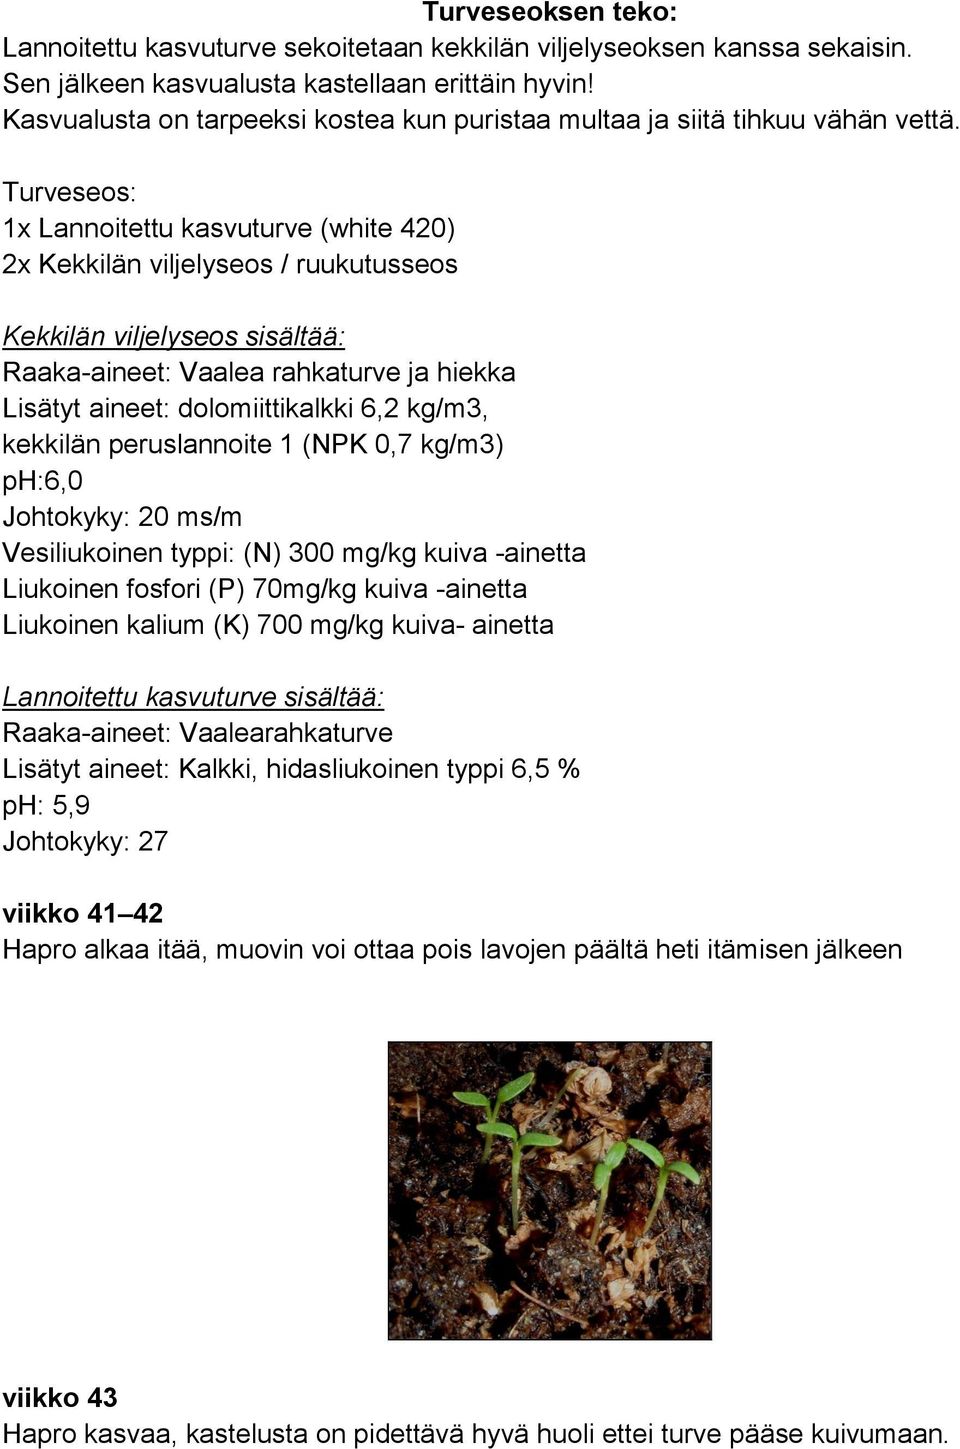 Turveseos: 1x Lannoitettu kasvuturve (white 420) 2x Kekkilän viljelyseos / ruukutusseos Kekkilän viljelyseos sisältää: Raaka-aineet: Vaalea rahkaturve ja hiekka Lisätyt aineet: dolomiittikalkki 6,2